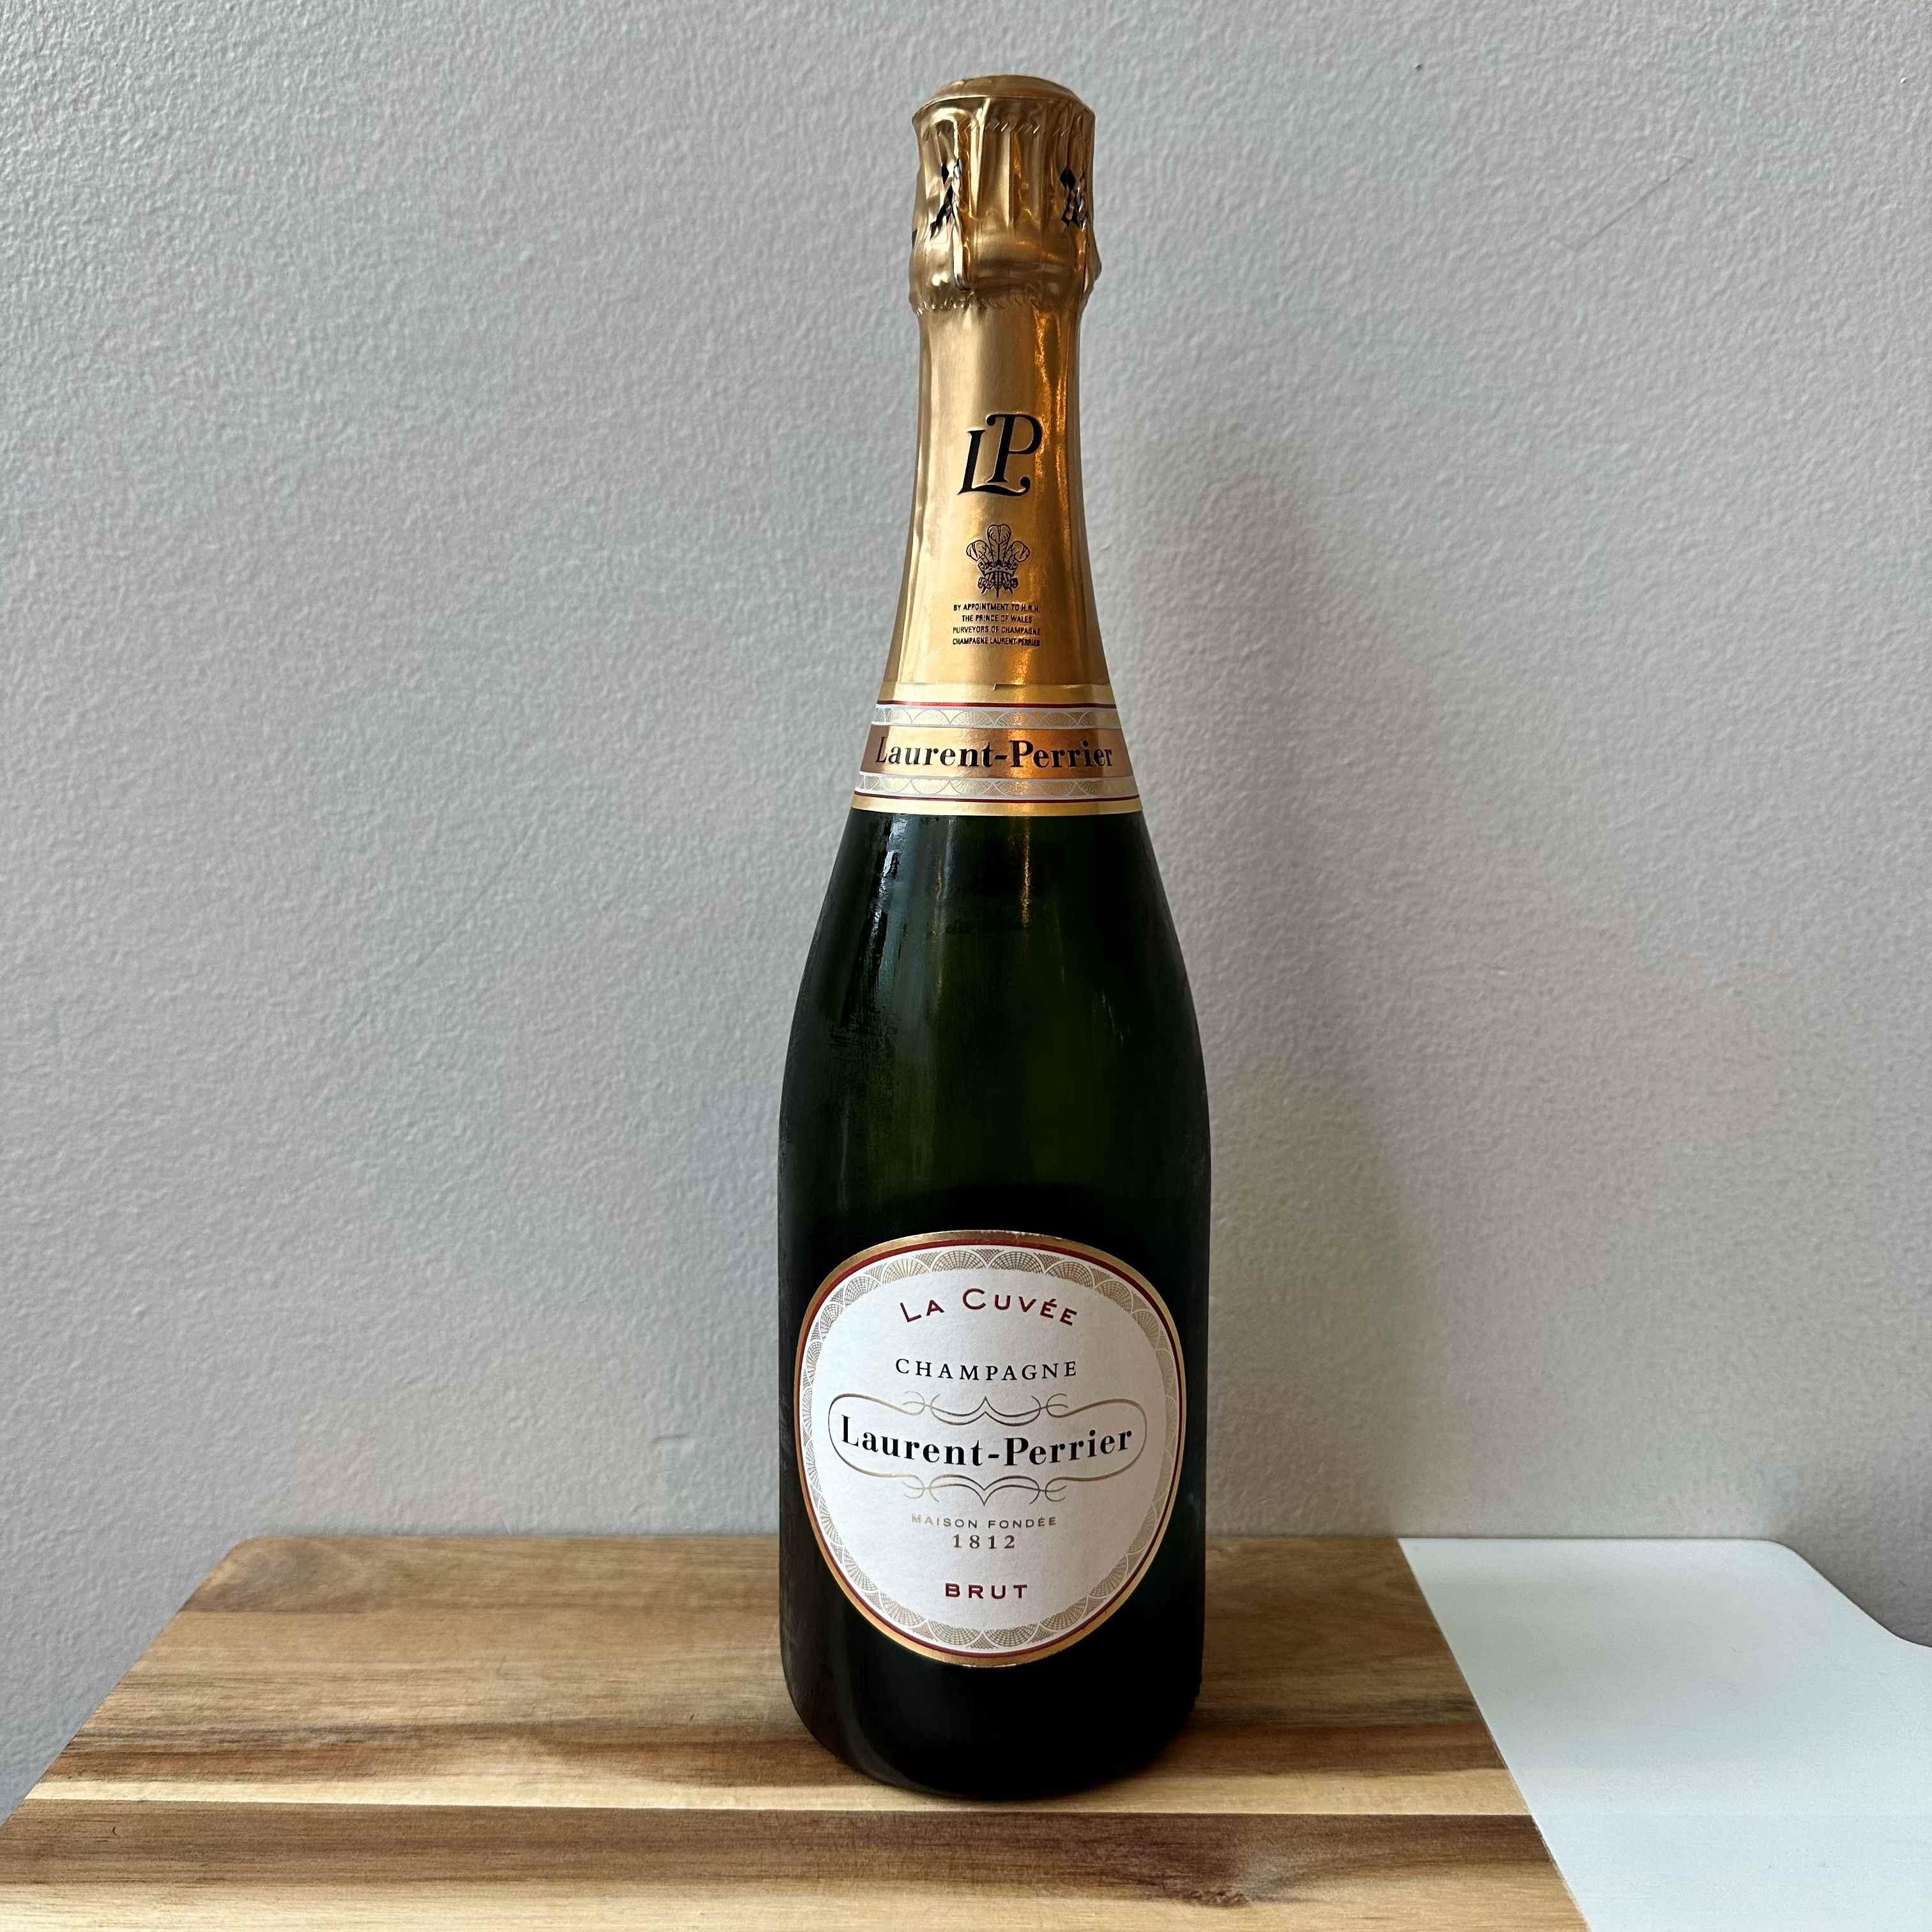 Laurent-Perrier "La Cuvee" Champagne N/V France